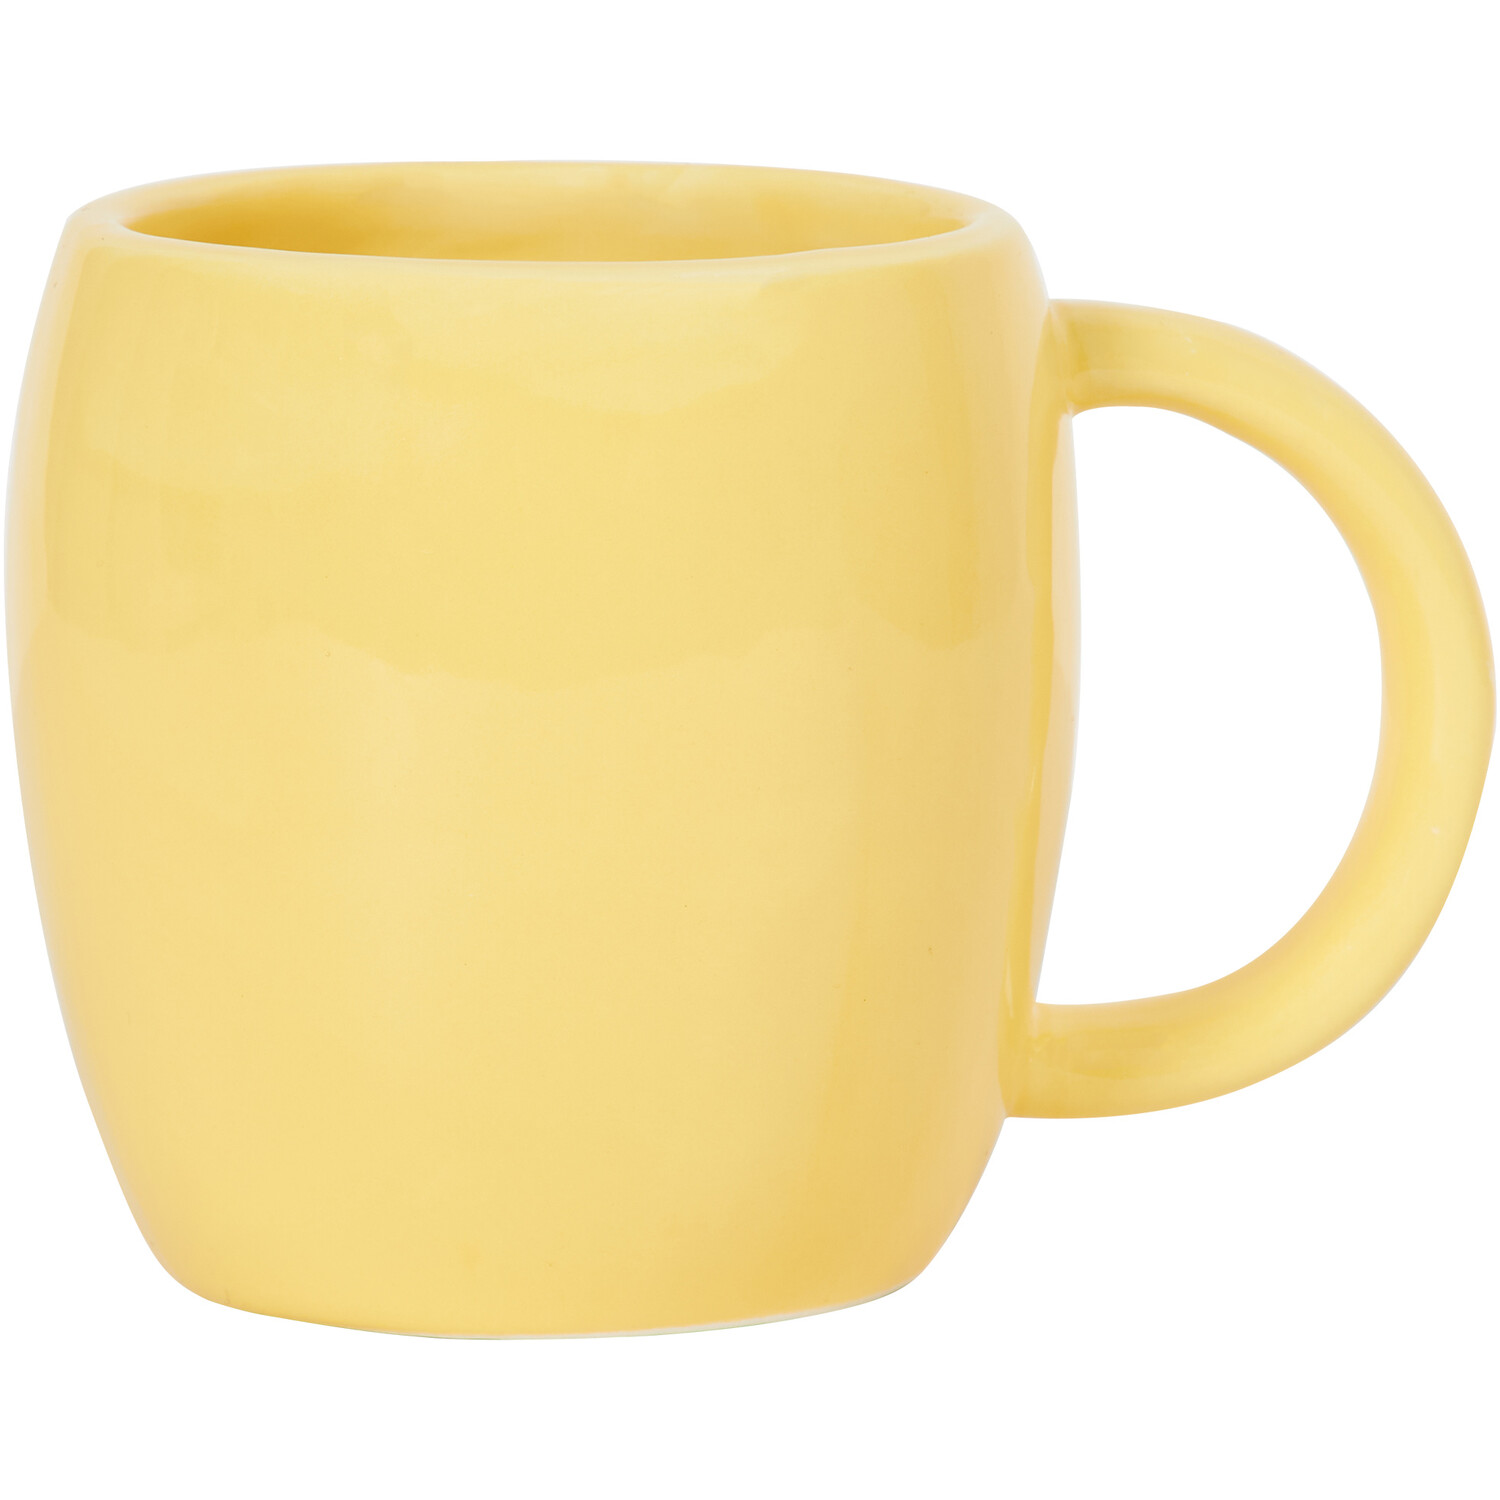 Easter Chick Mug - Yellow Image 3